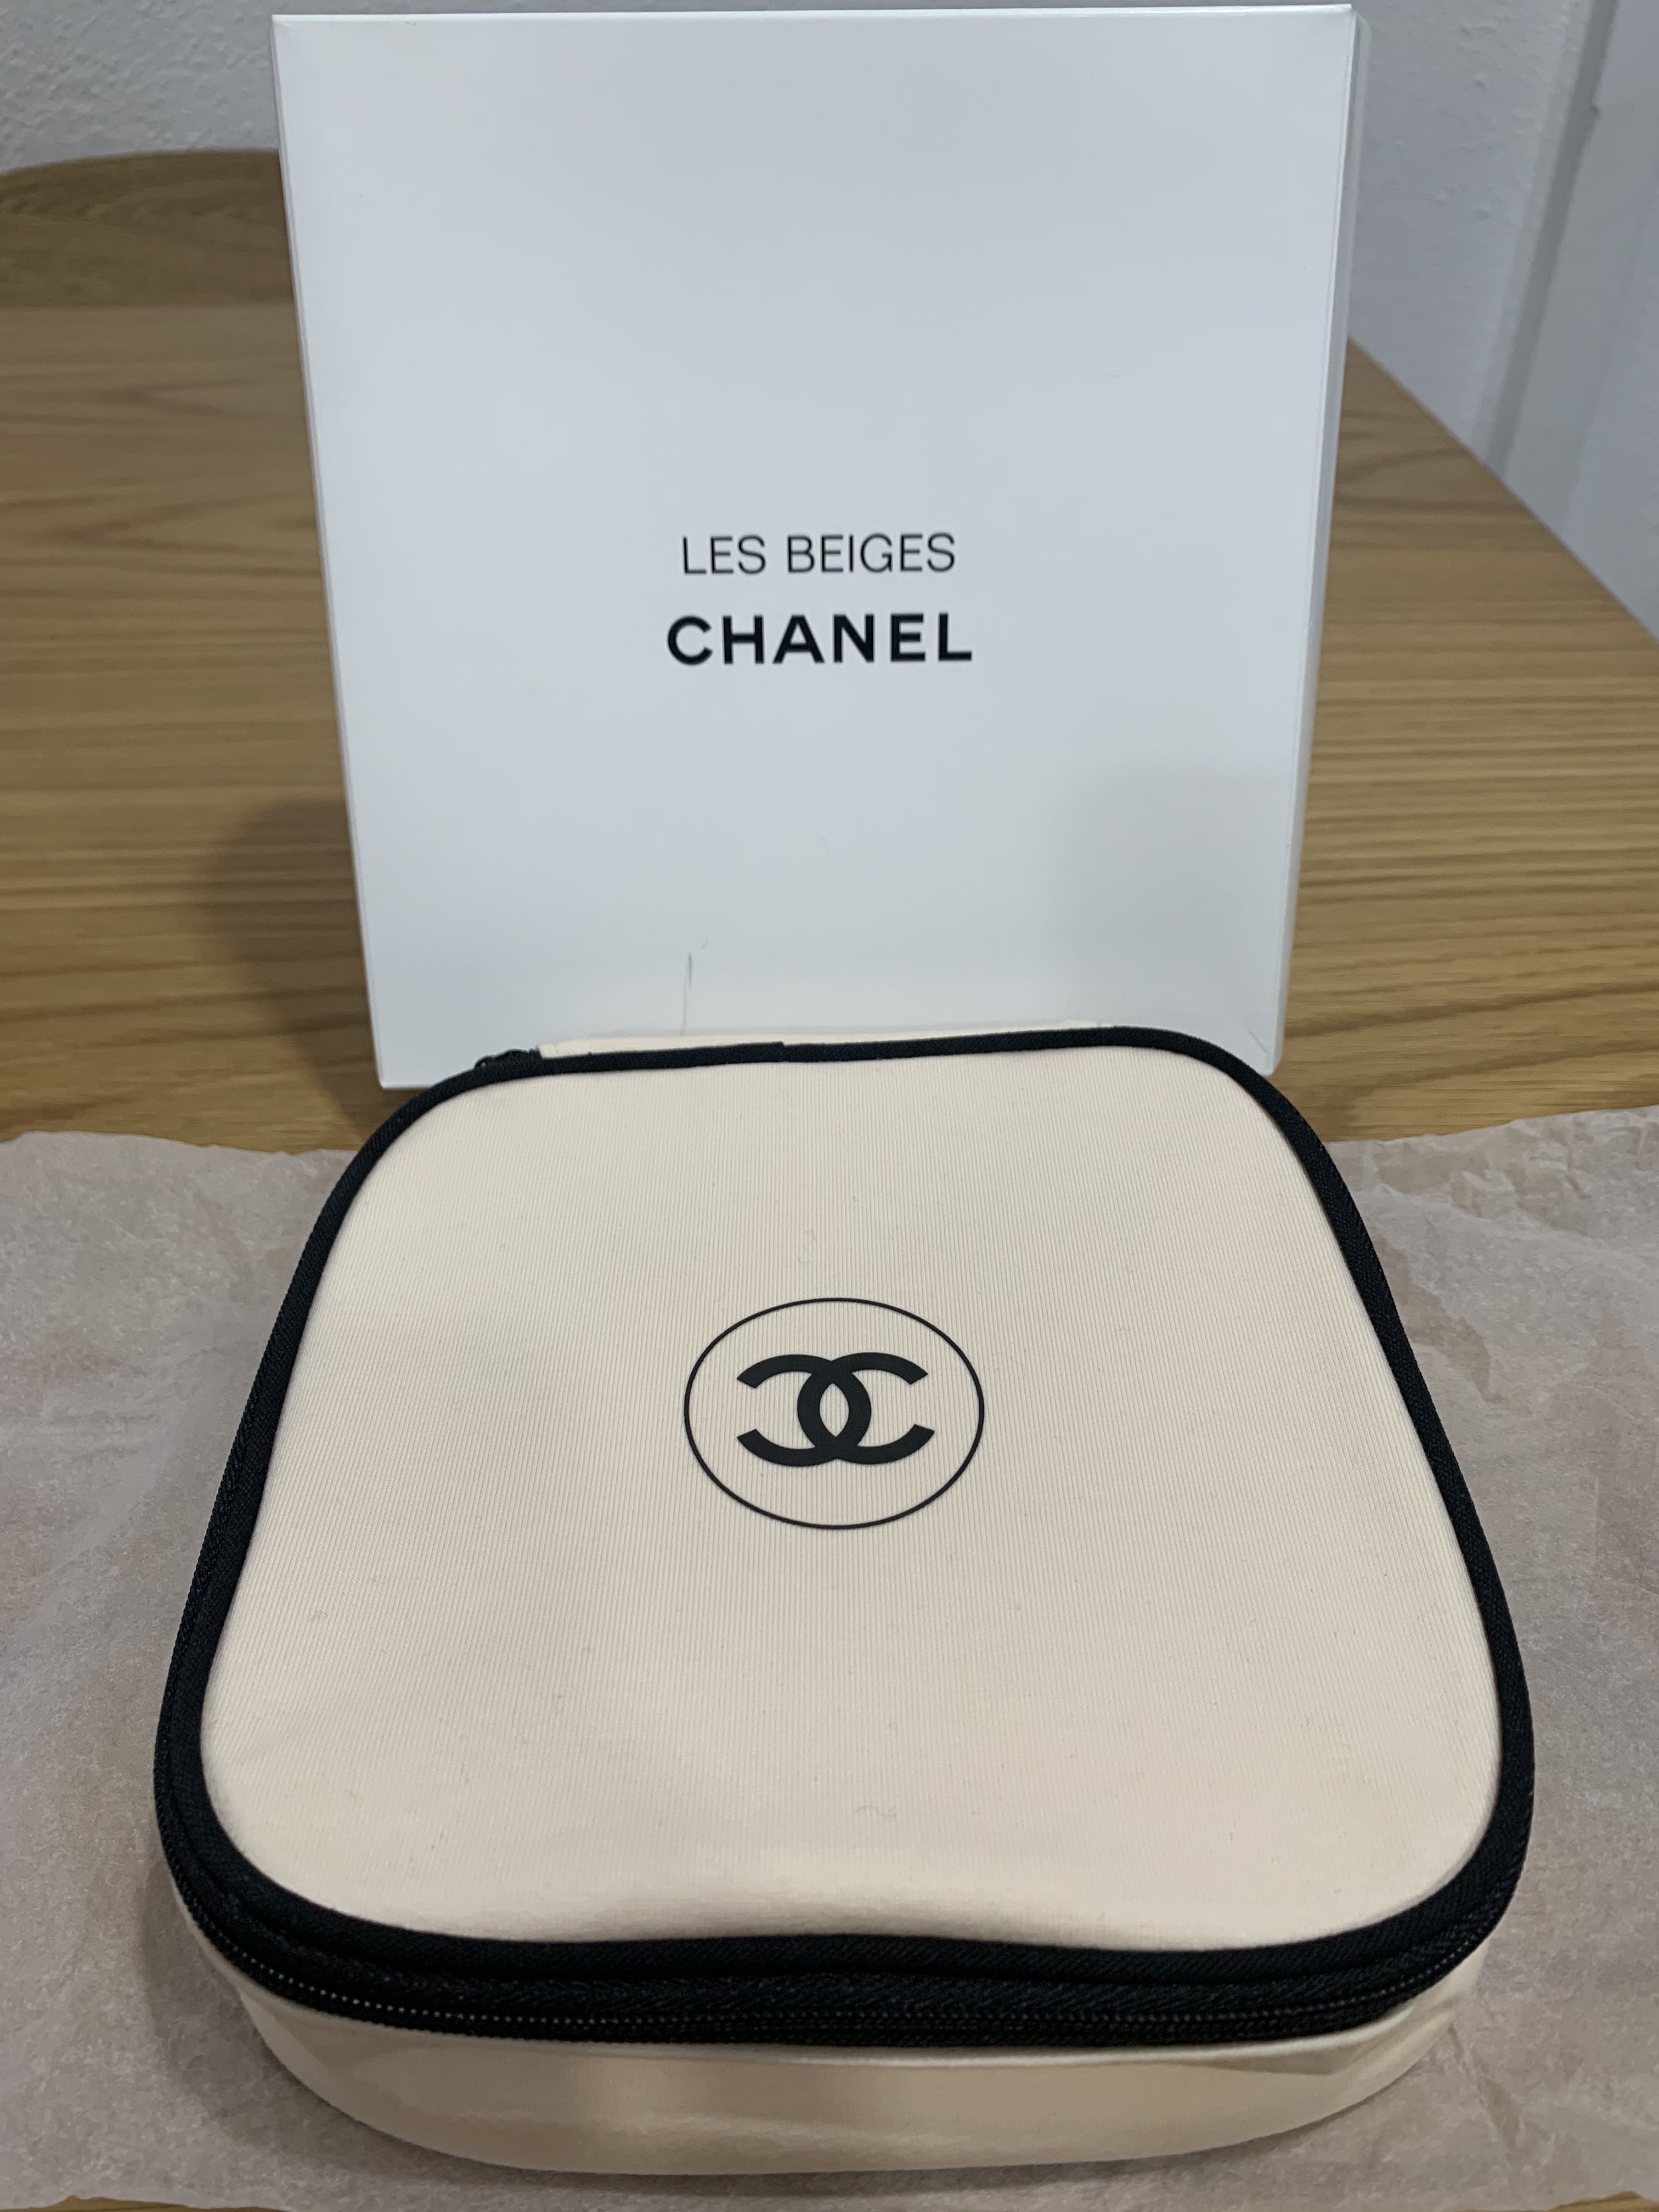 Chanel Les Beige / Sublimage Cosmetics Pouch